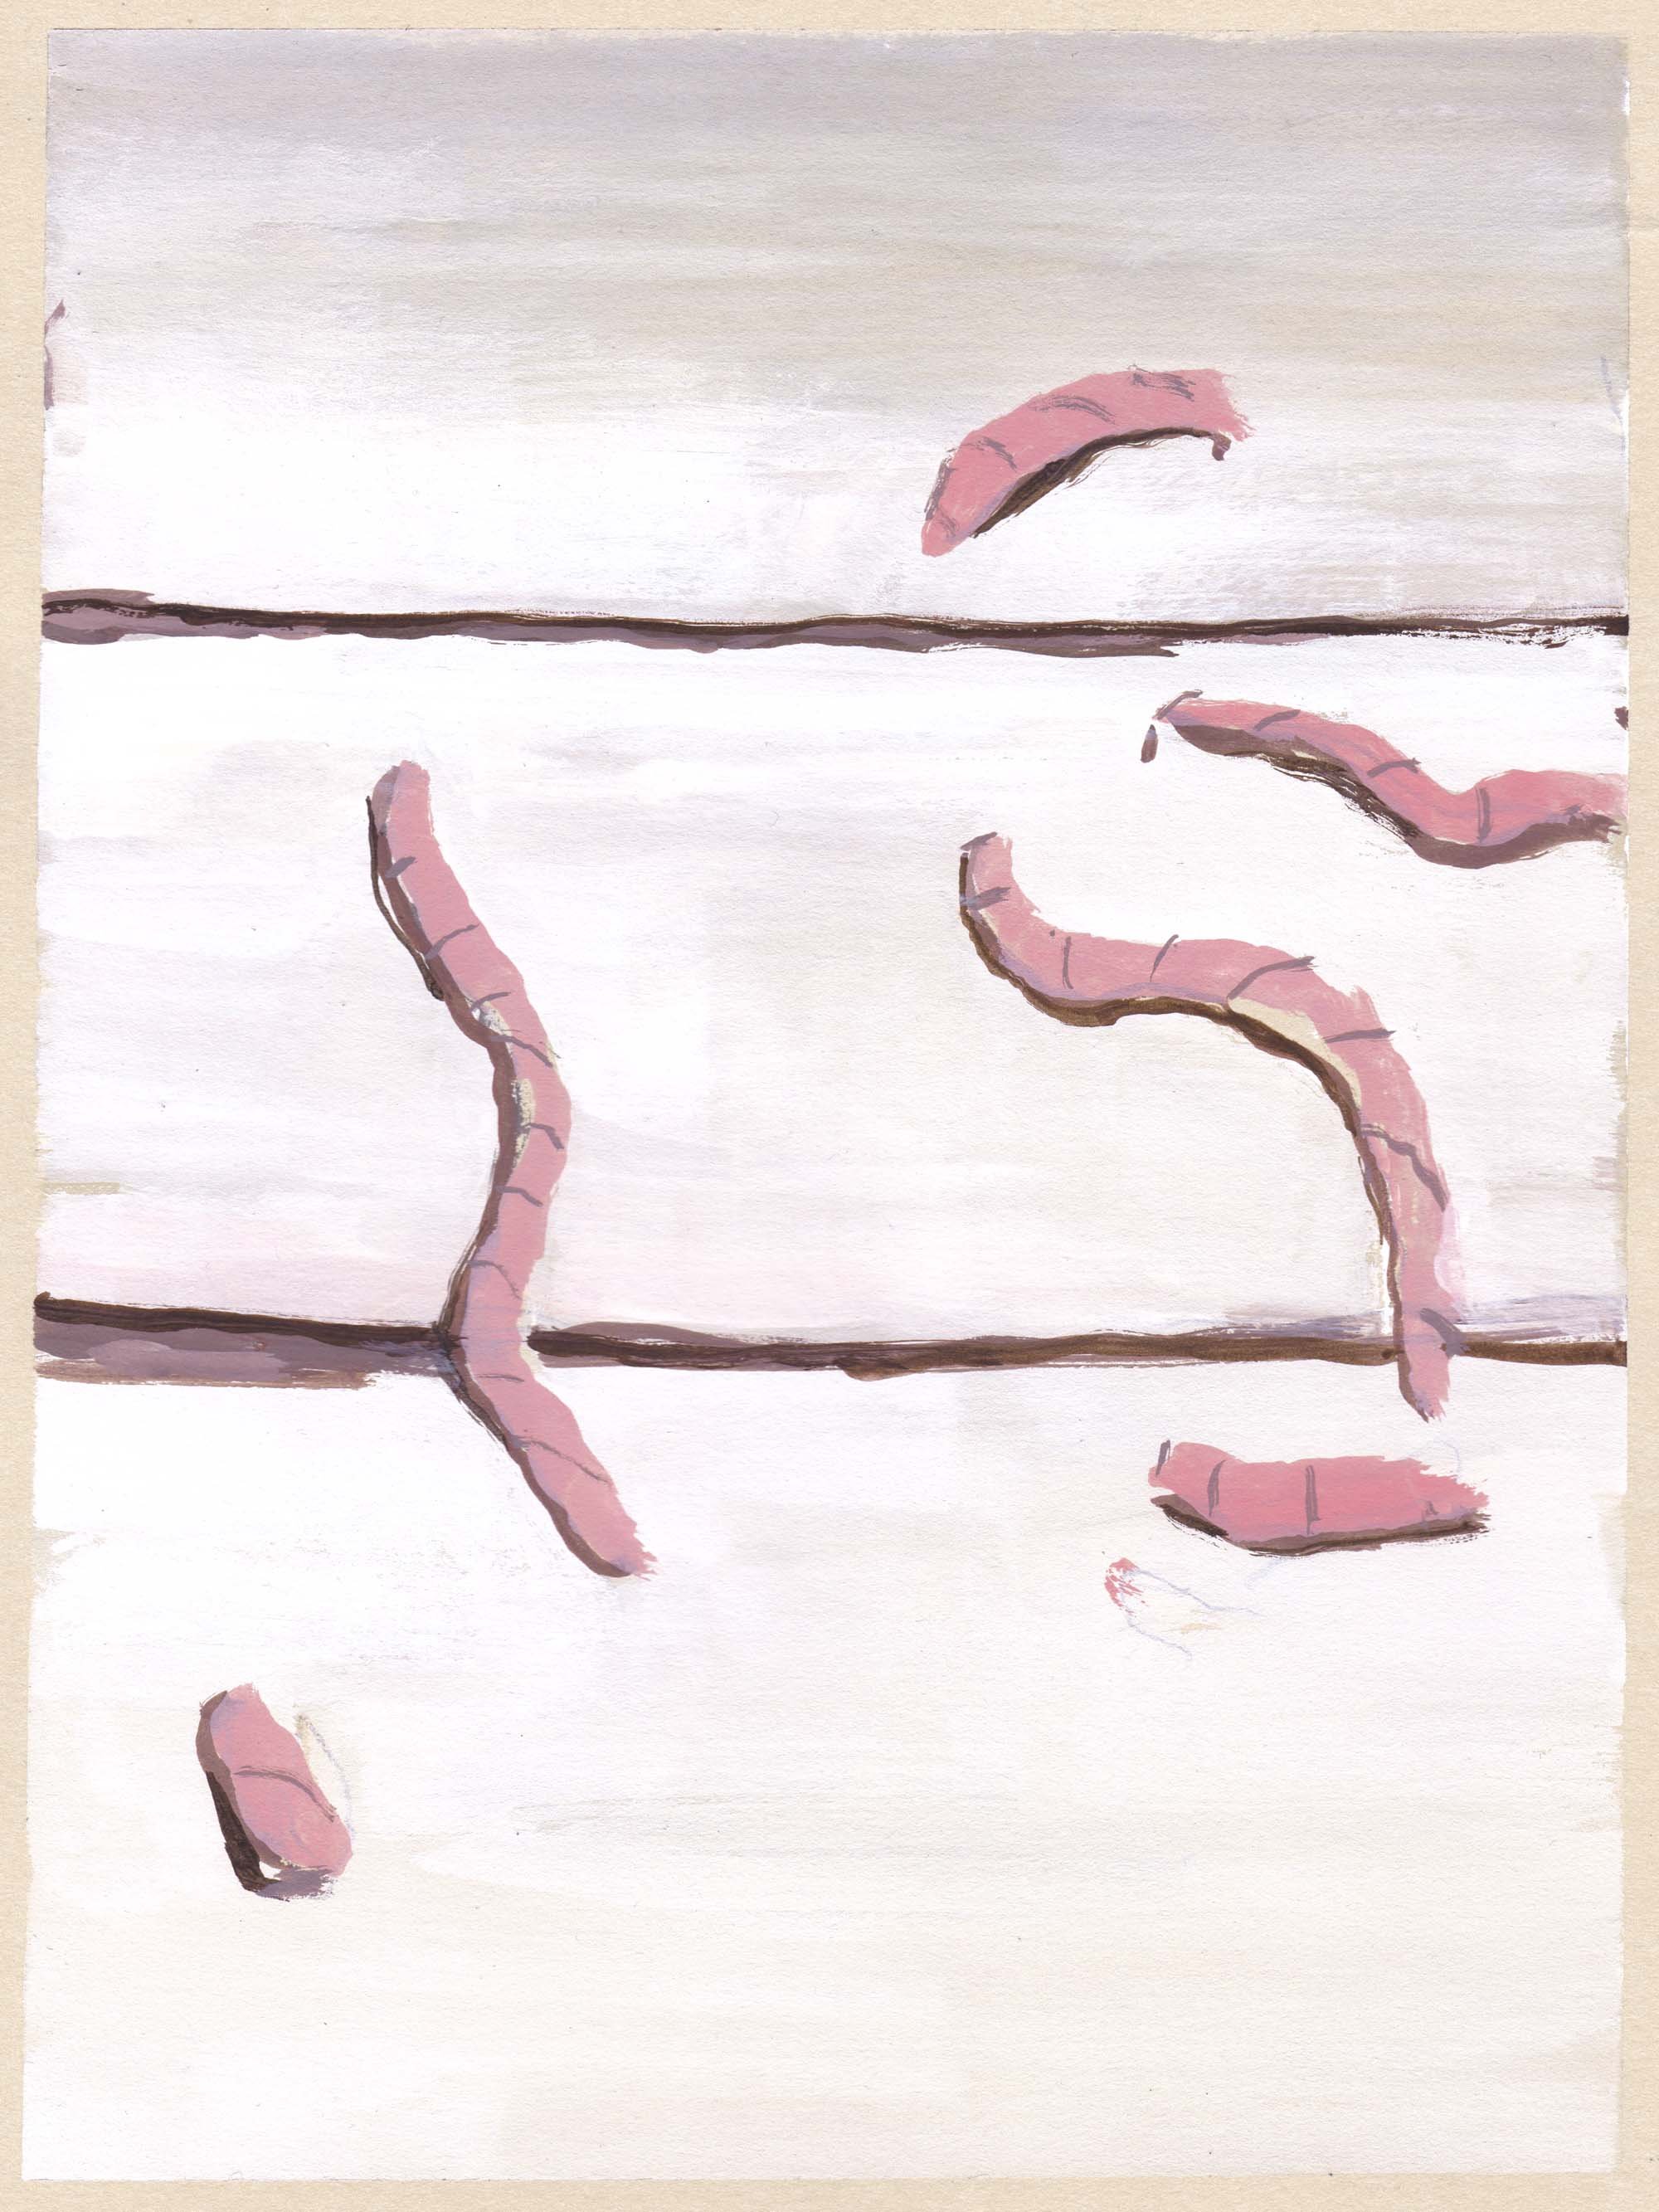 Earthworms, 2014